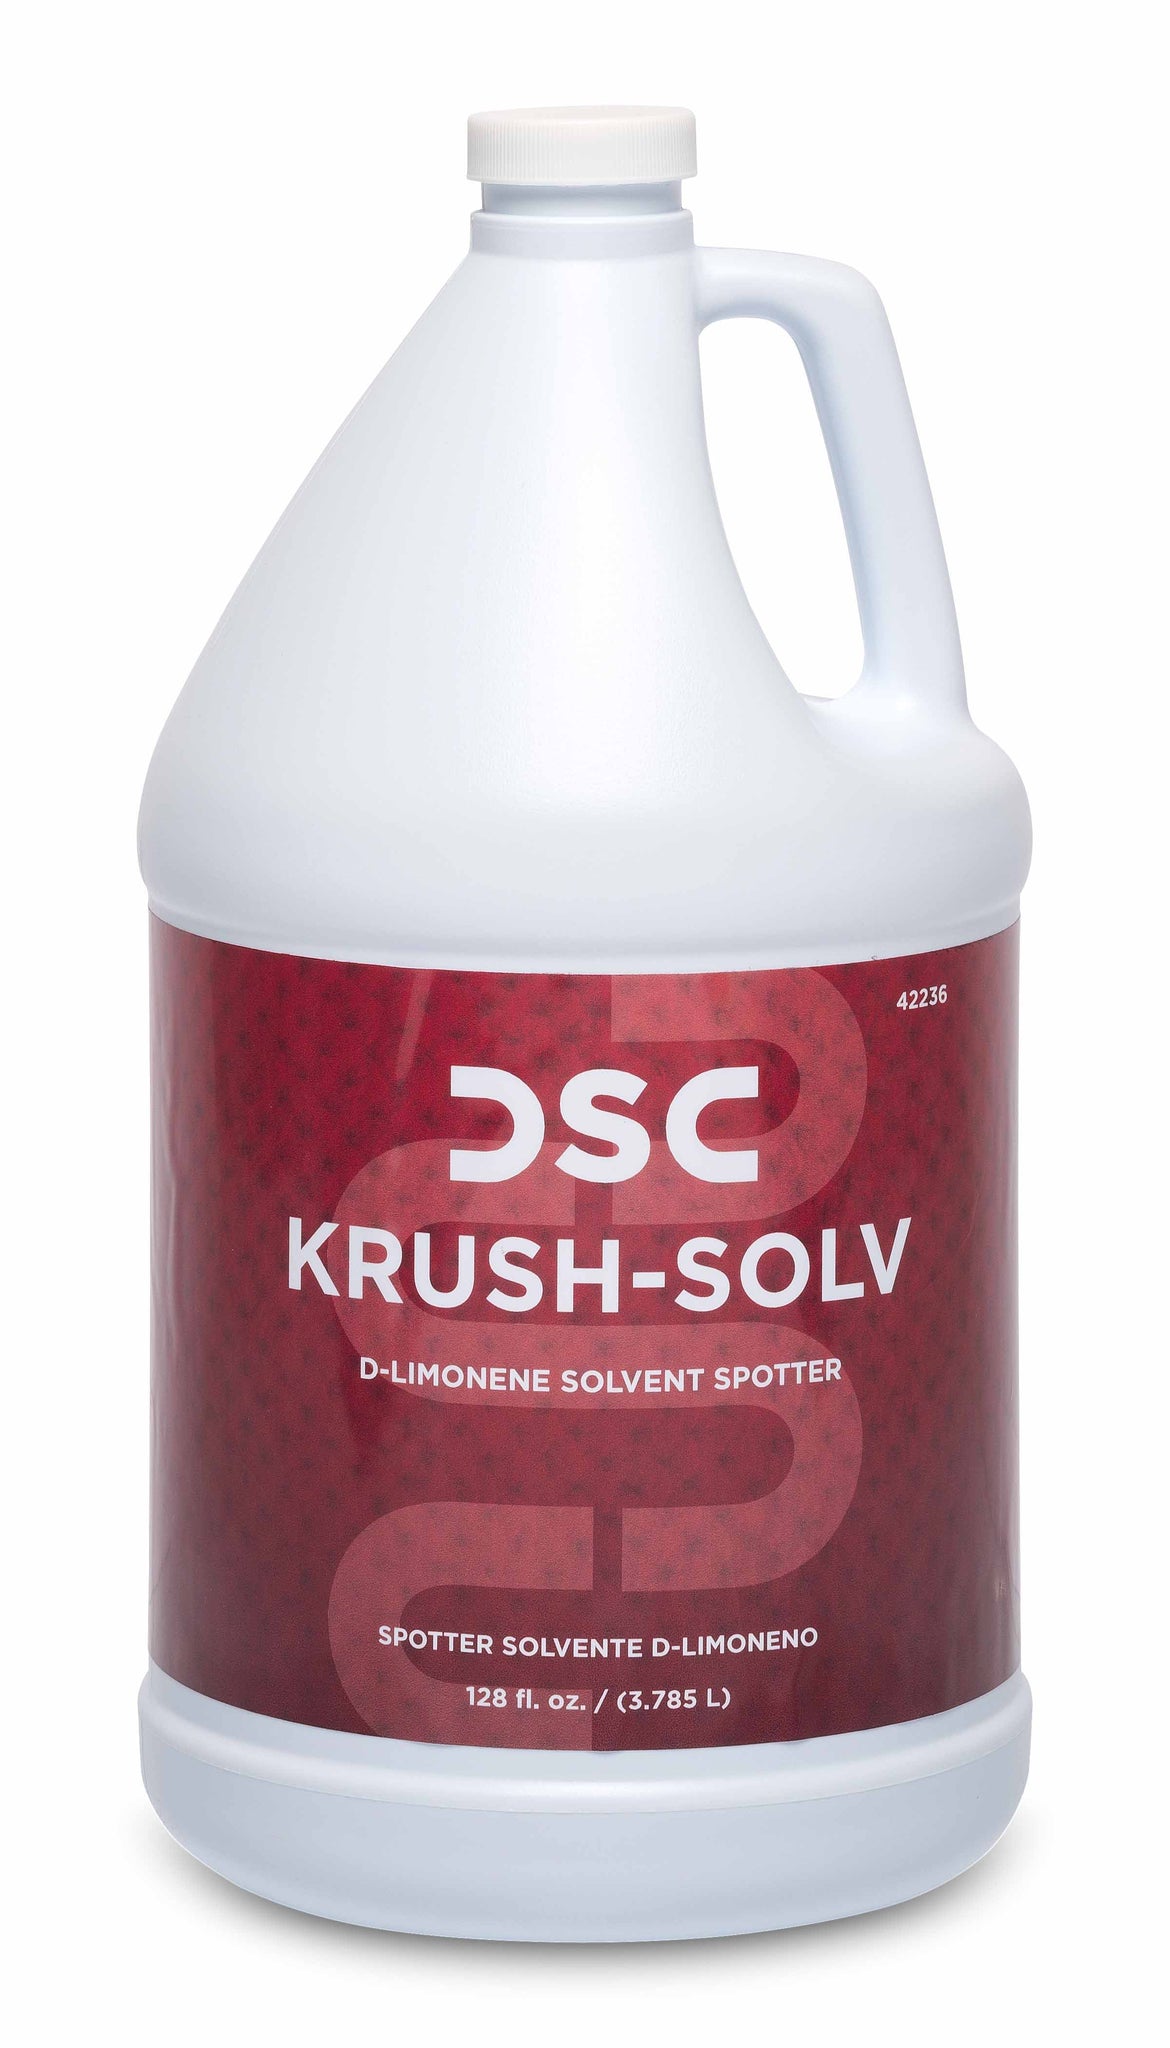 PRESPRAYS AND SPOTTERS/ "Krush-Solv" d'Limonene Spotter, Pint or Gallon